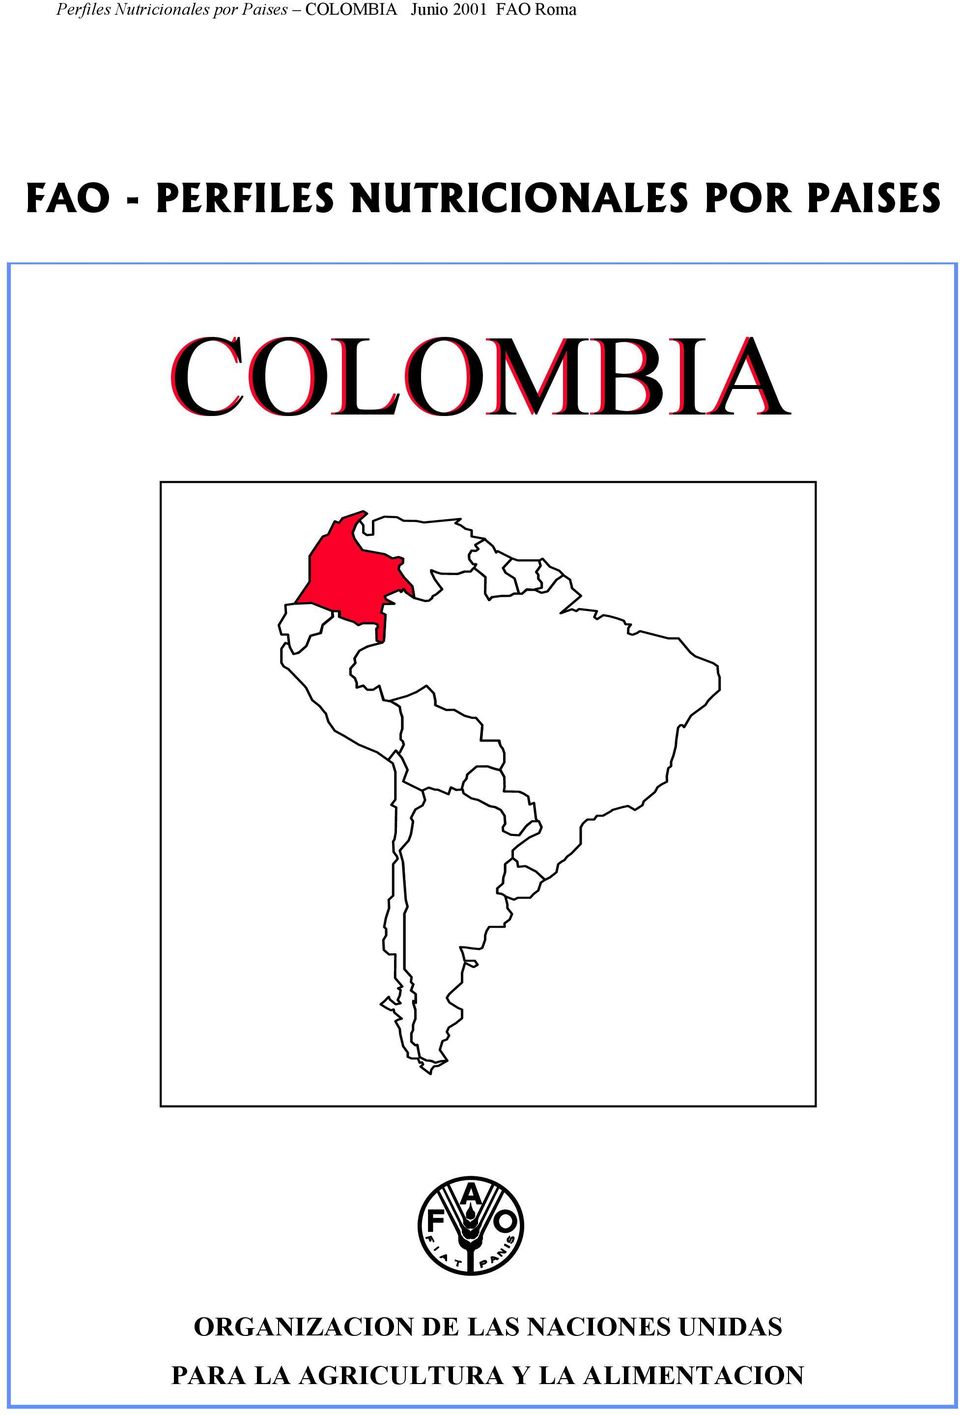 COLOMBIA ORGANIZACION FOOD AND AGRICULTURE DE LAS NACIONES